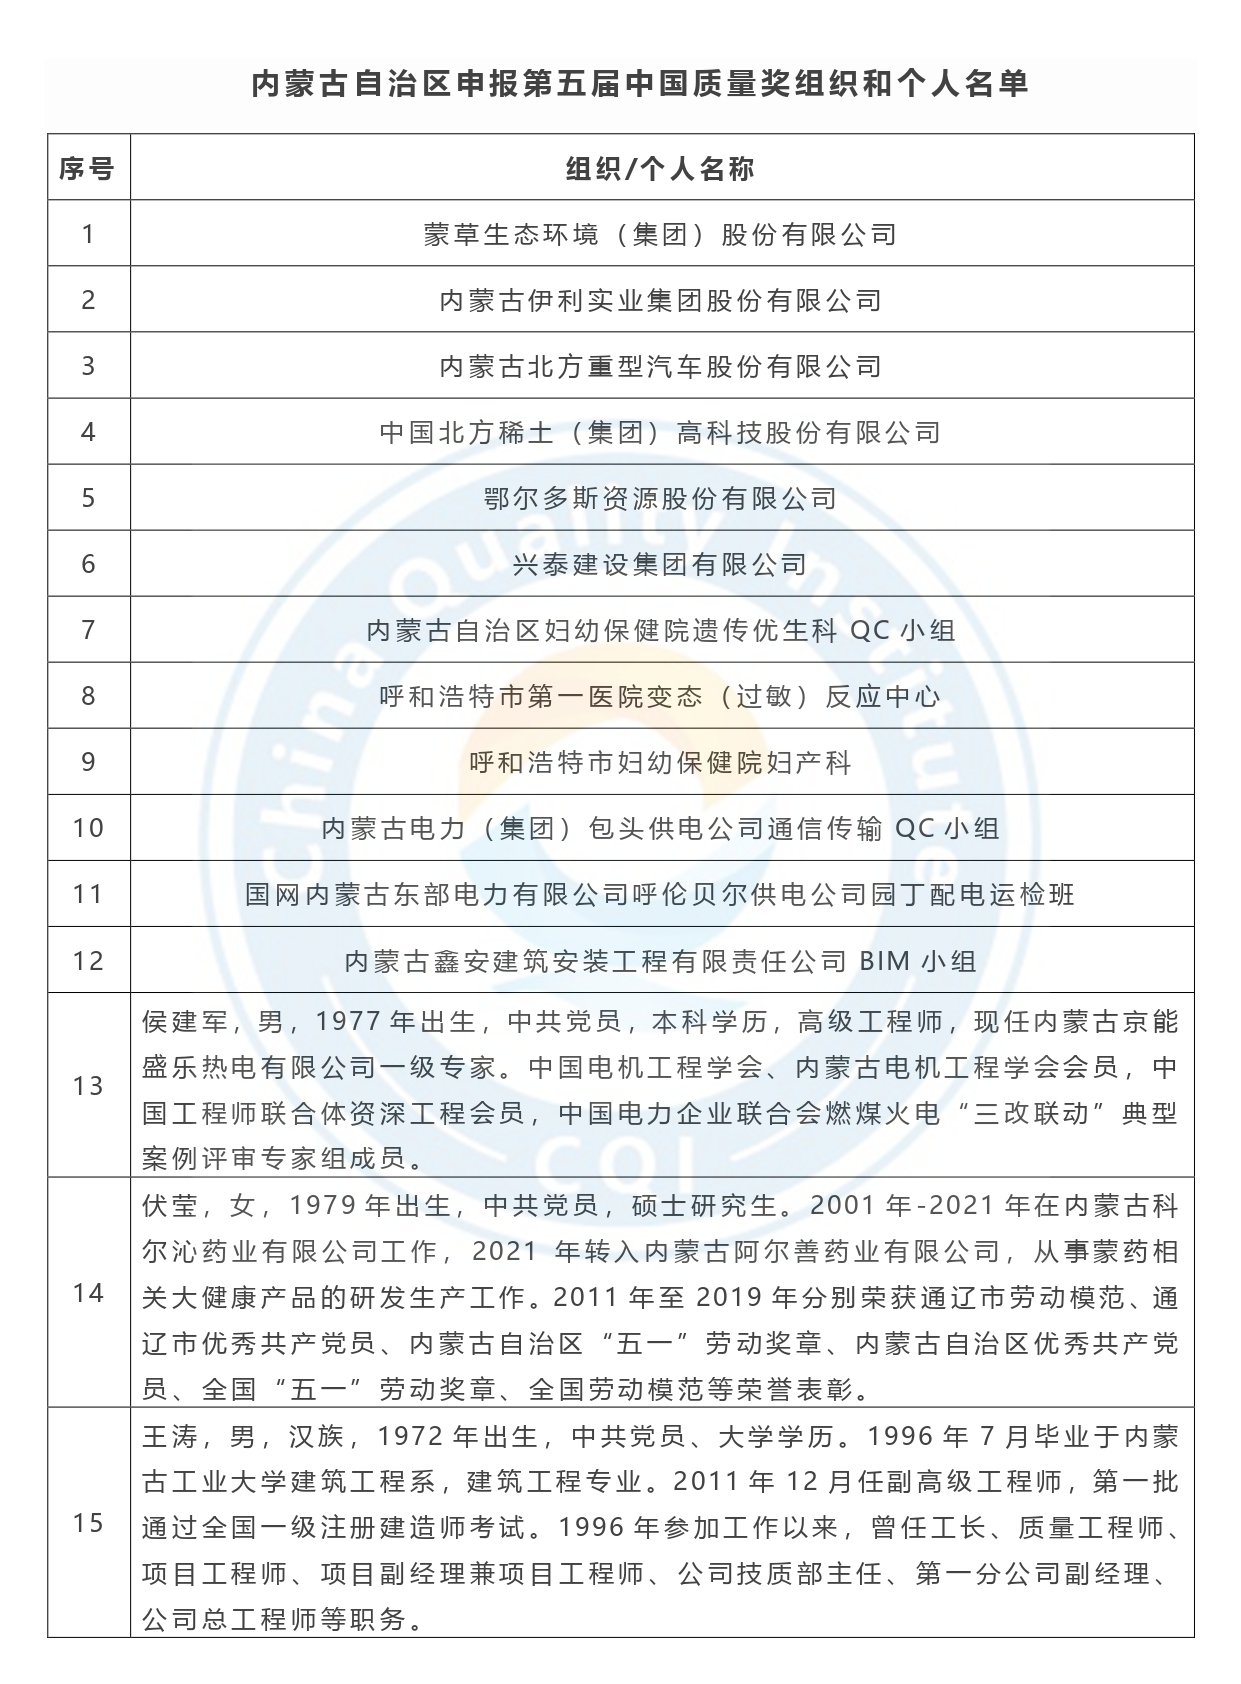 第五届中国质量奖申报名单公示-内蒙古.jpg